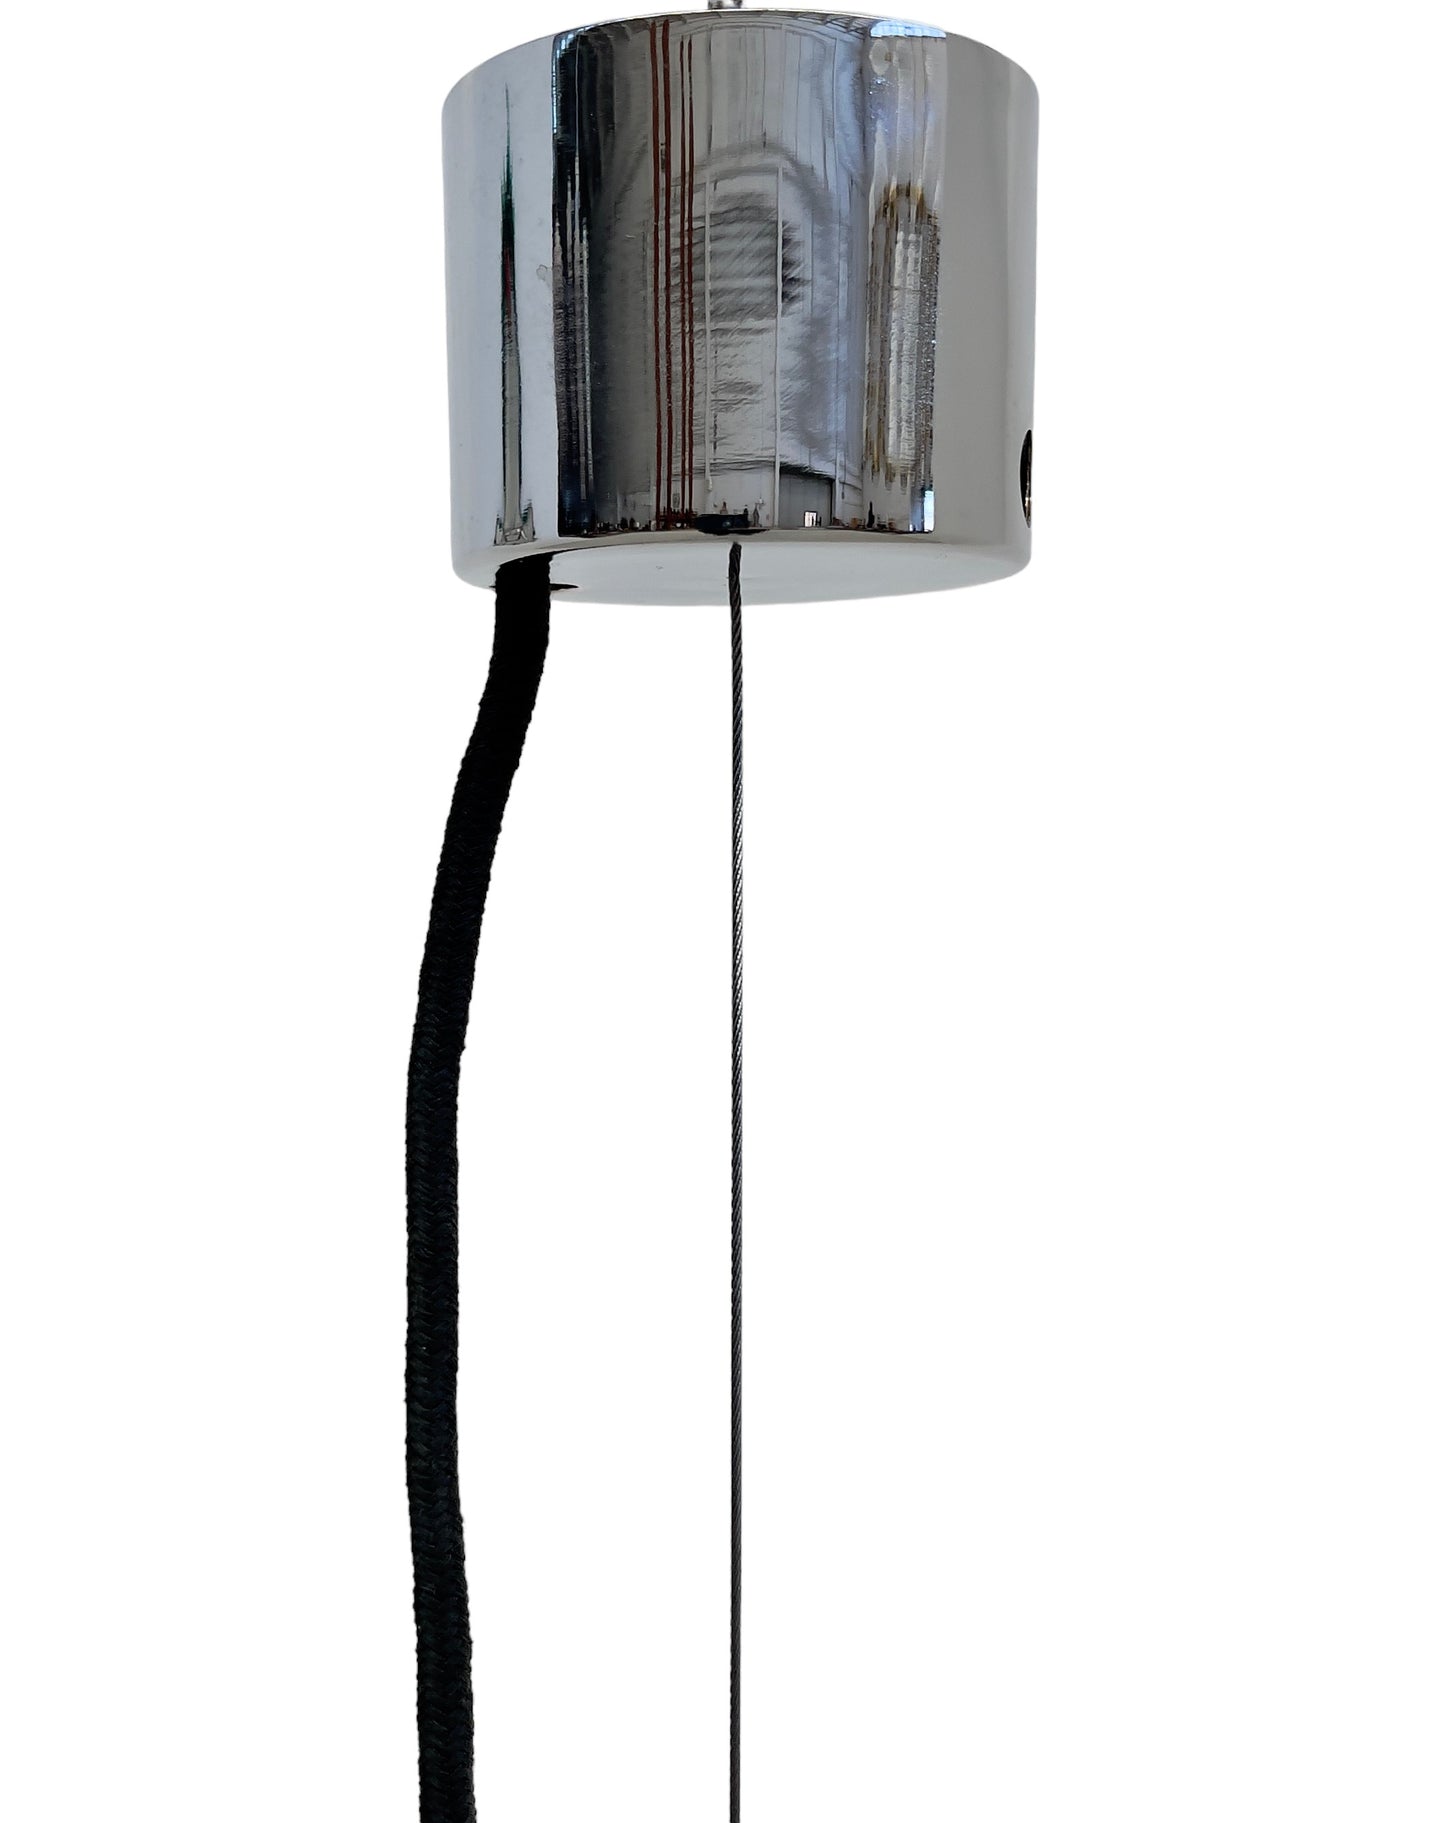 Sergio Mazza Suspension lamp, 1970s